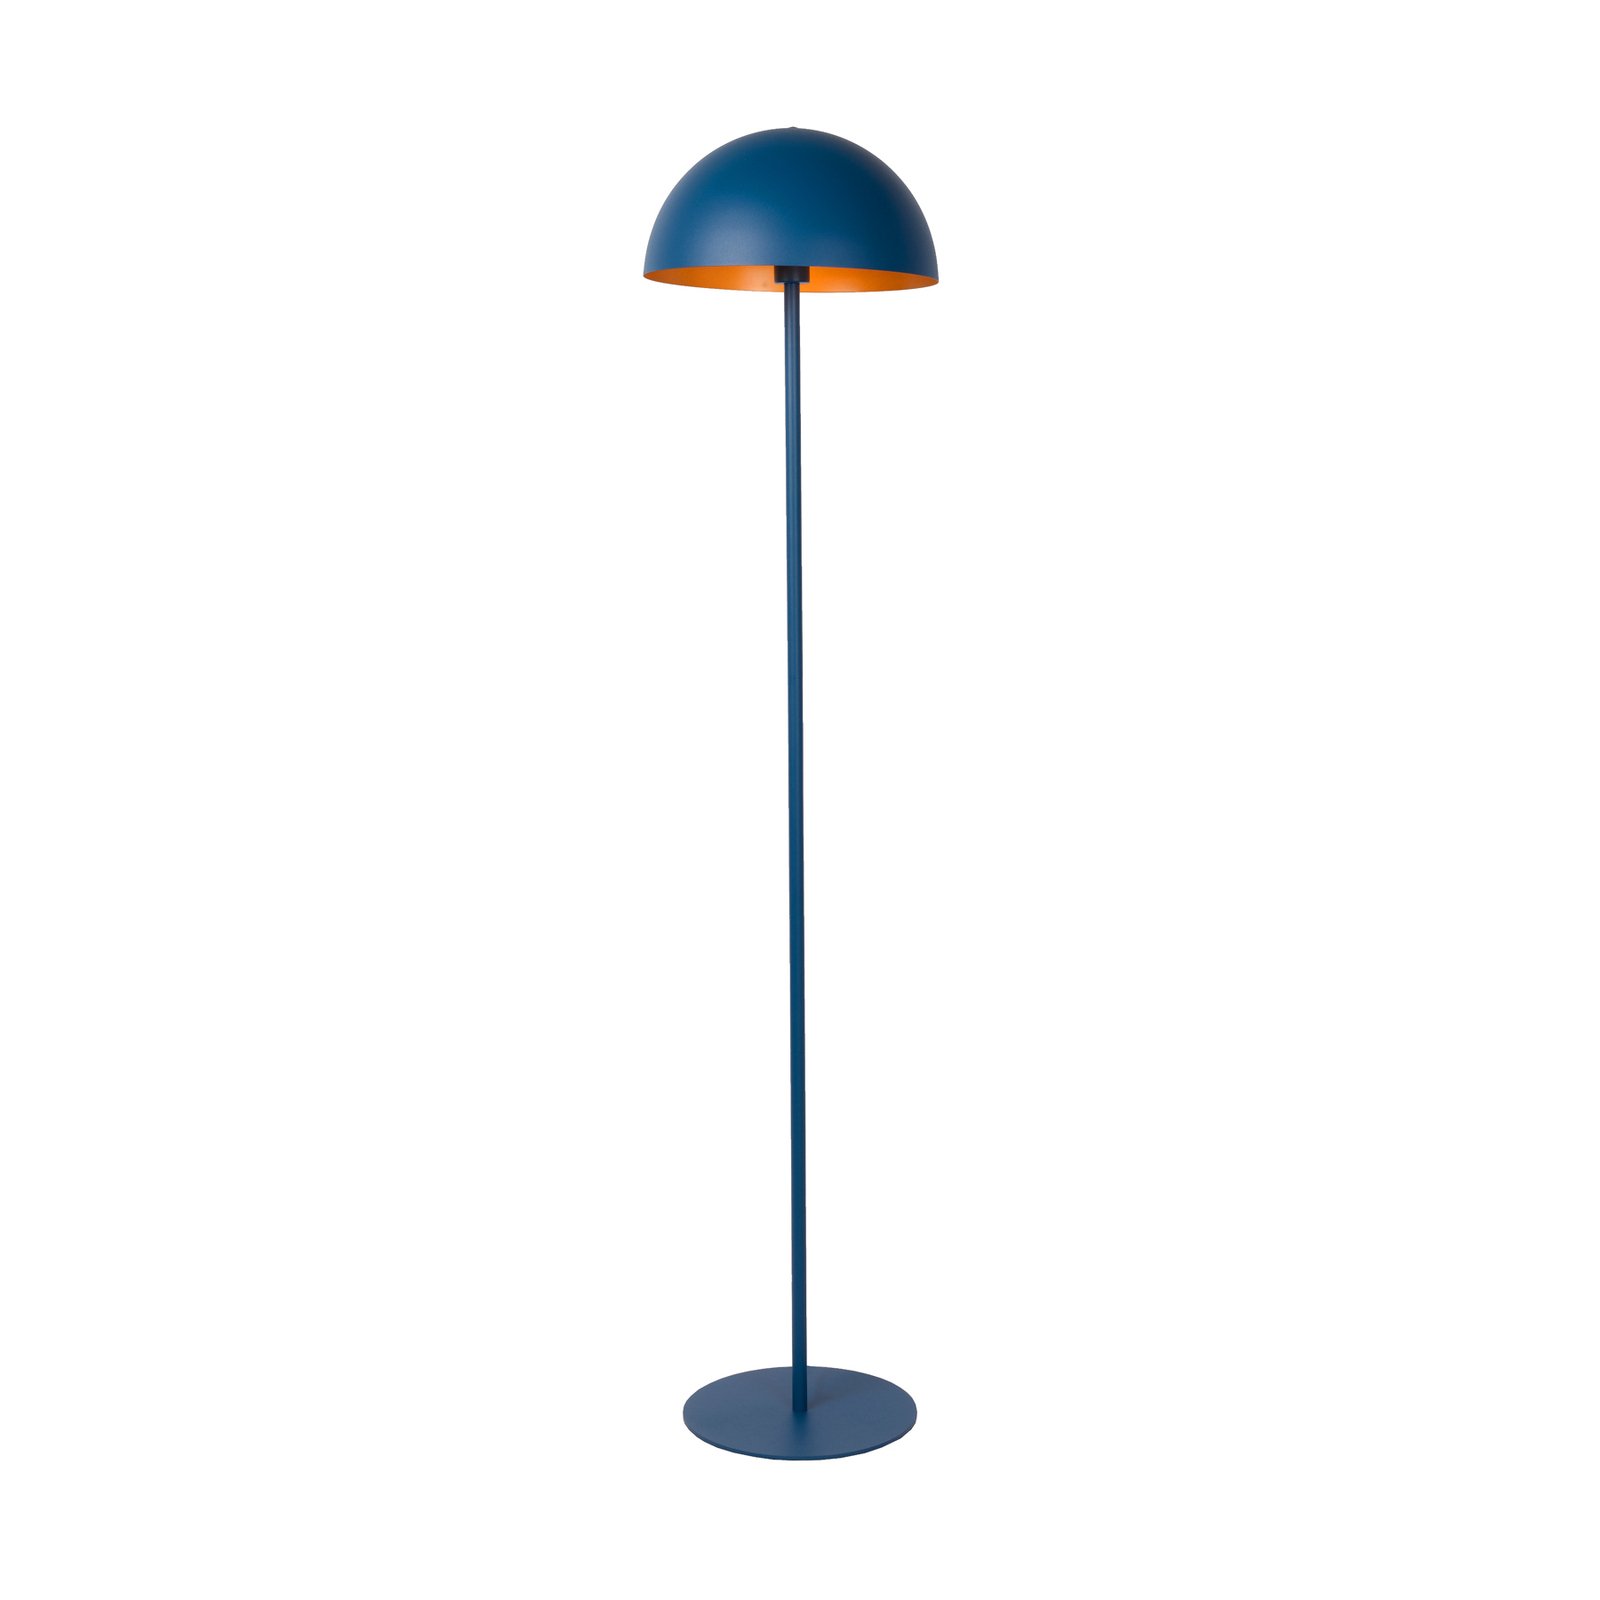 Siemon floor lamp made of steel, Ø 35 cm, blue